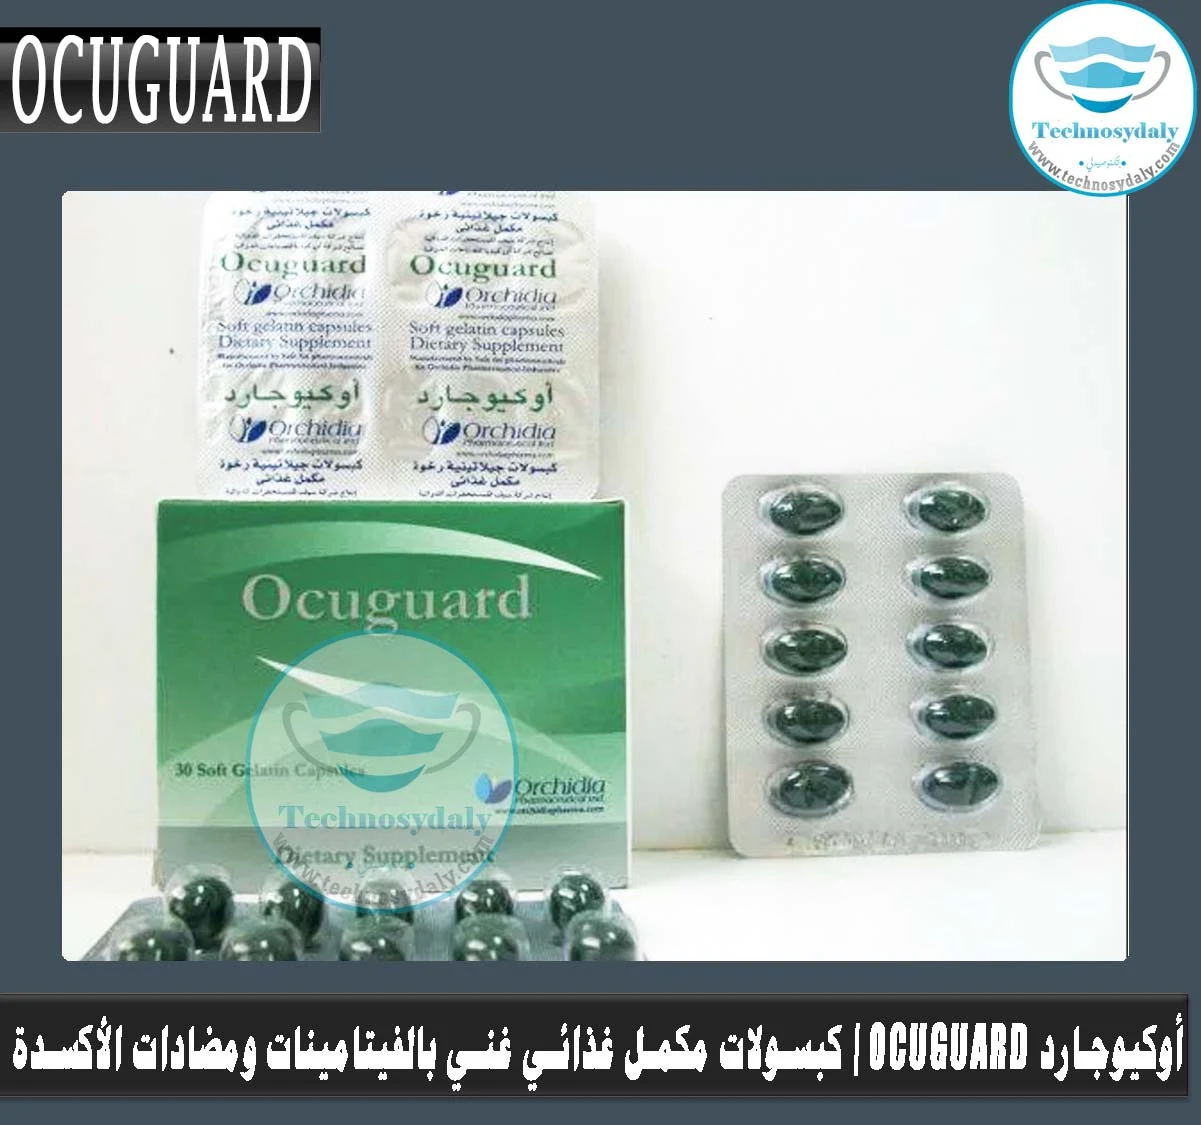 Ocuguard